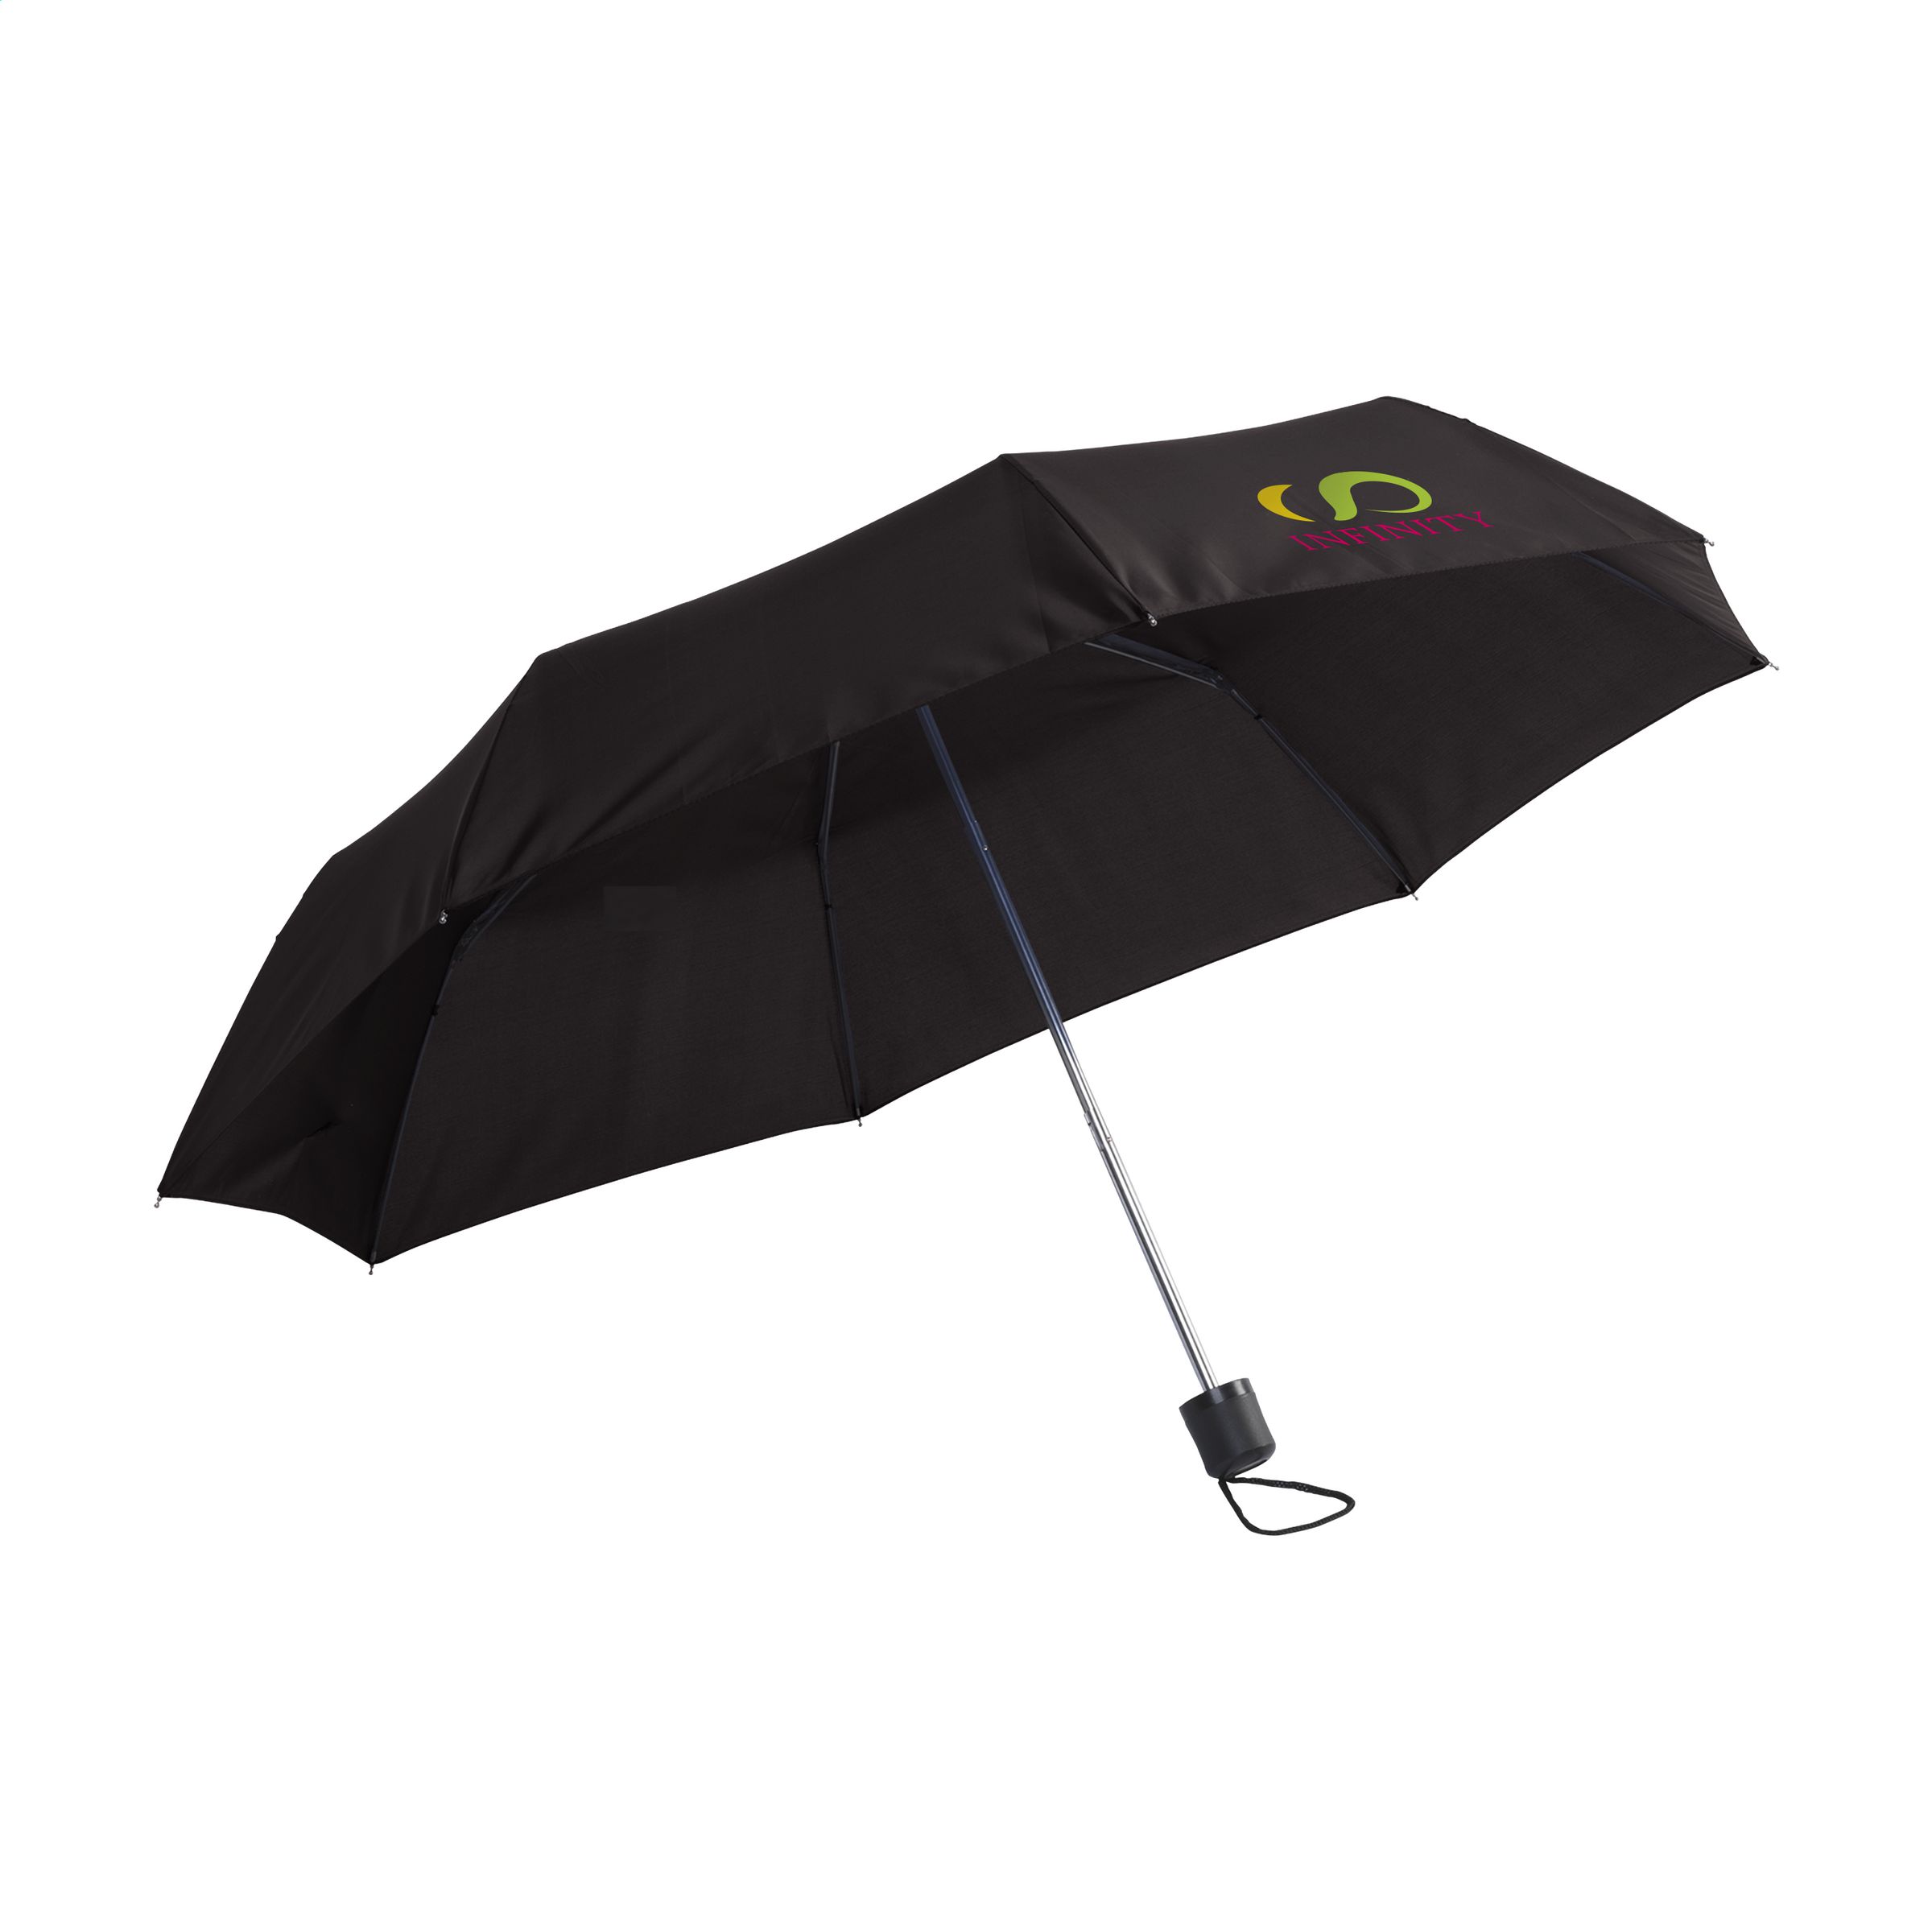 Parapluie personnalisé ultra compact 92cm - Garibaldi - Zaprinta Belgique